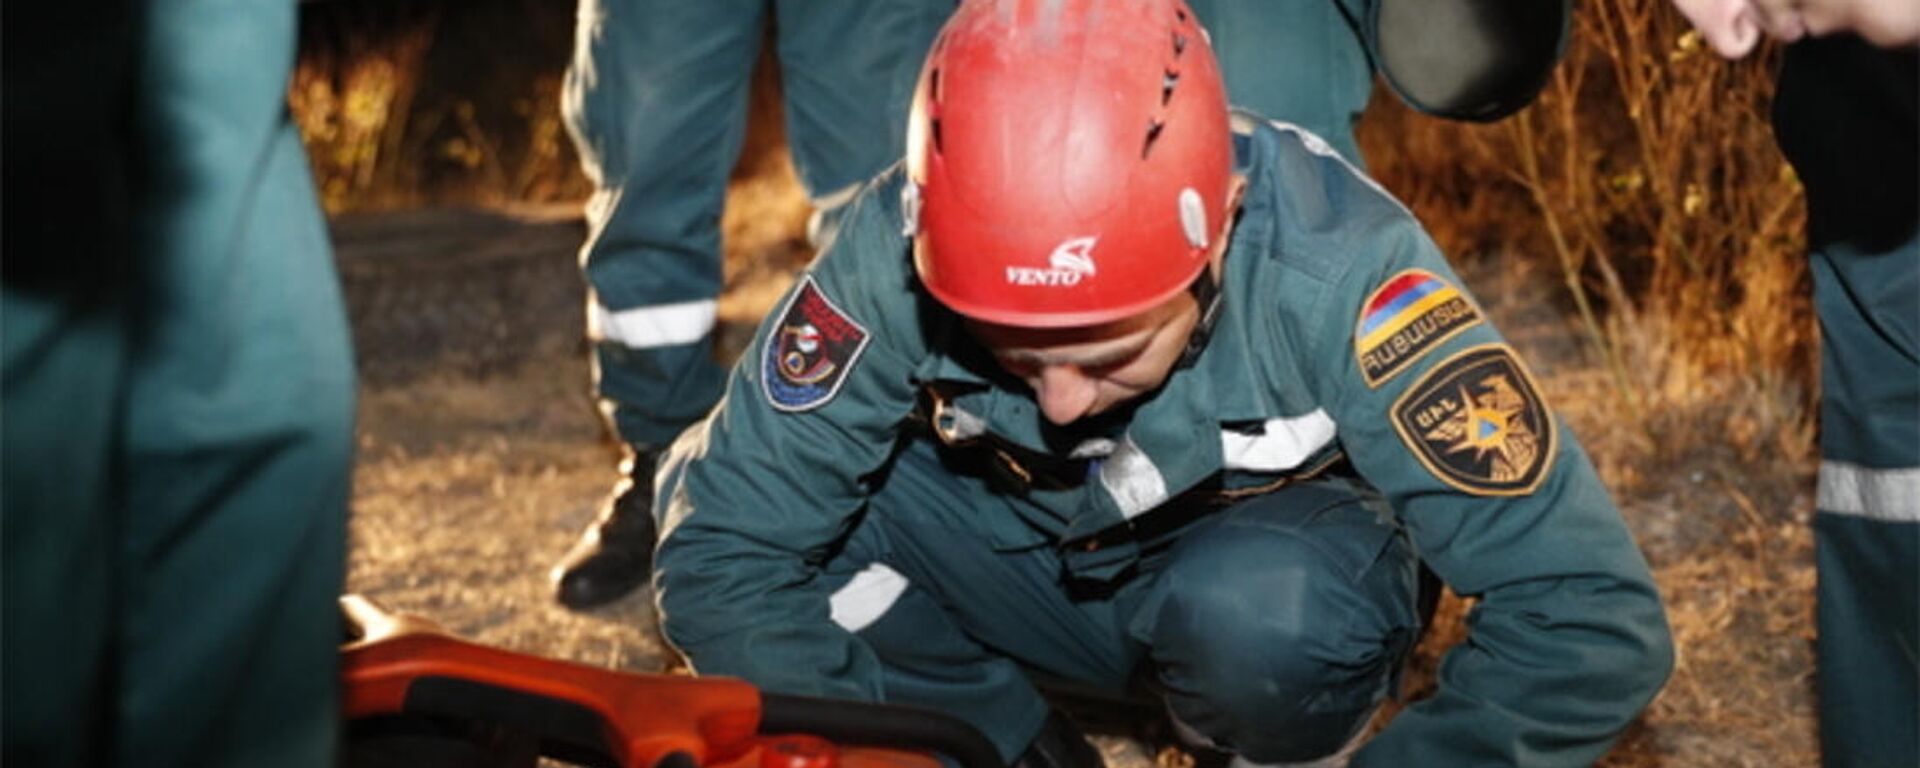 Спасатели пытаются спасти ребенка, оставшегося под завалами в районе Анках майла (11 октября 2021)/ Еревaн - Sputnik Армения, 1920, 04.12.2021